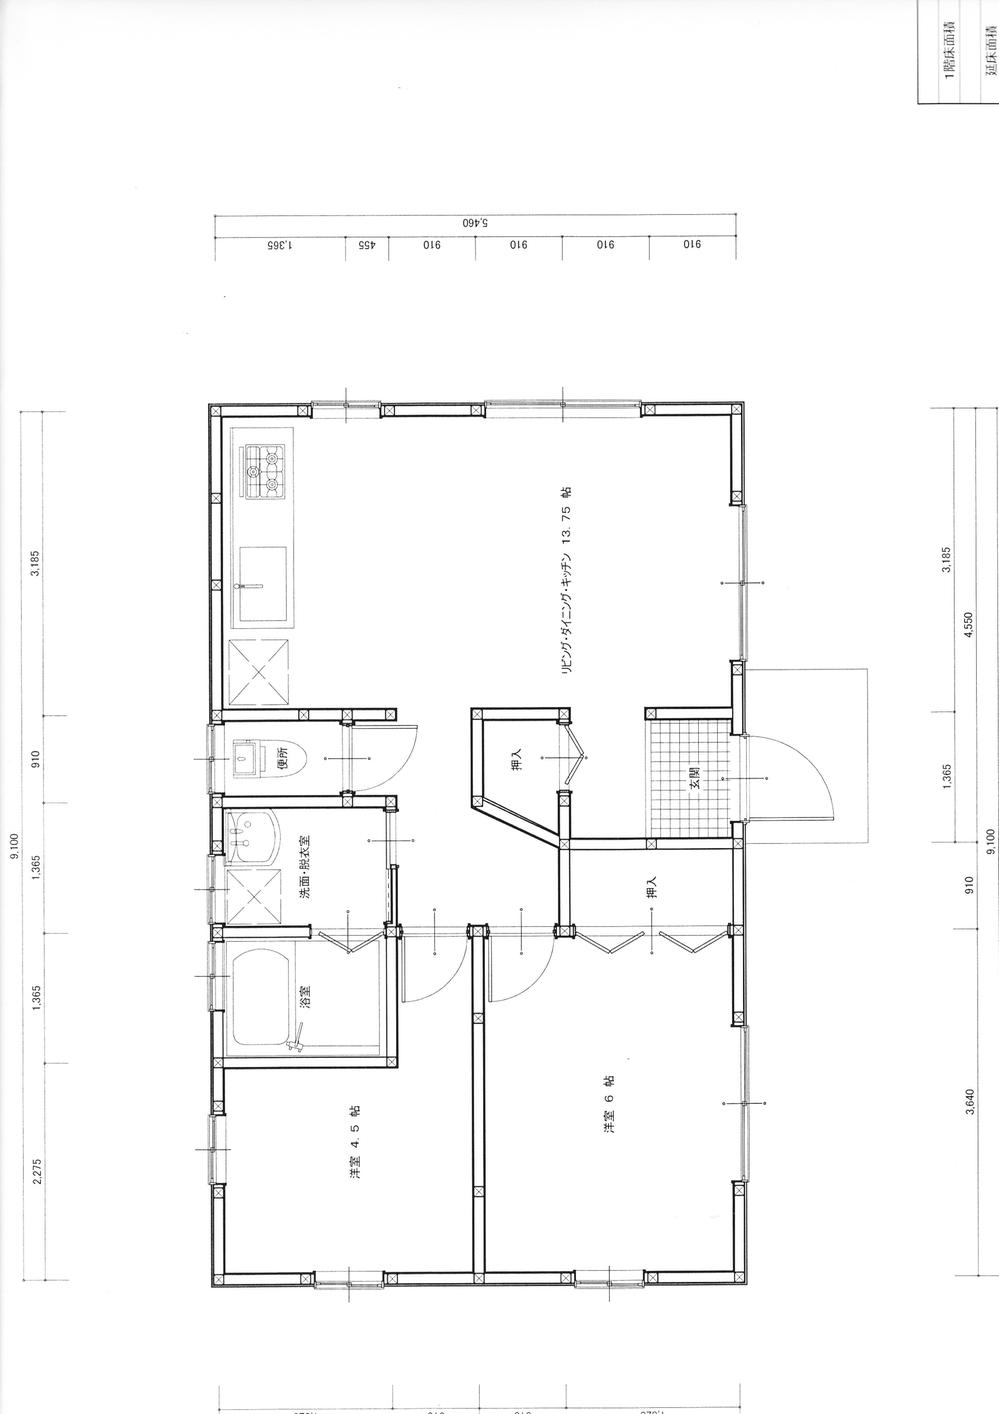 Floor plan. 9.8 million yen, 2LDK, Land area 290 sq m , Building area 49.69 sq m